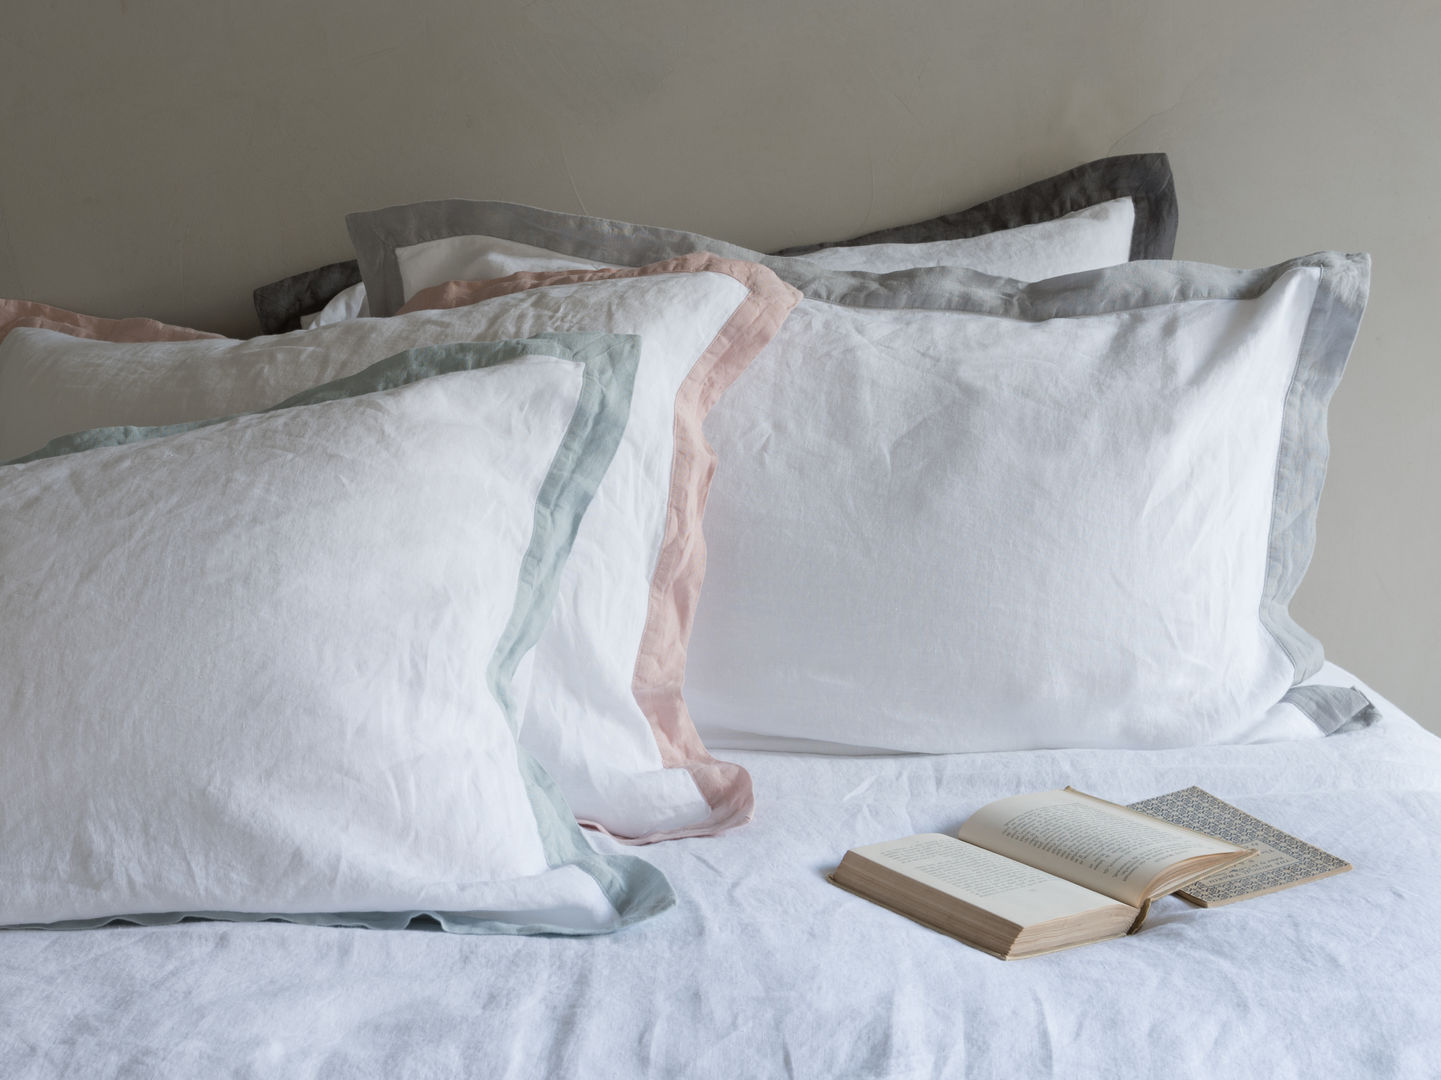 Lazy Daze bed linen Loaf Modern Bedroom bedding,bedlinen,linen,trimming,grey,pink,charcoal,blue